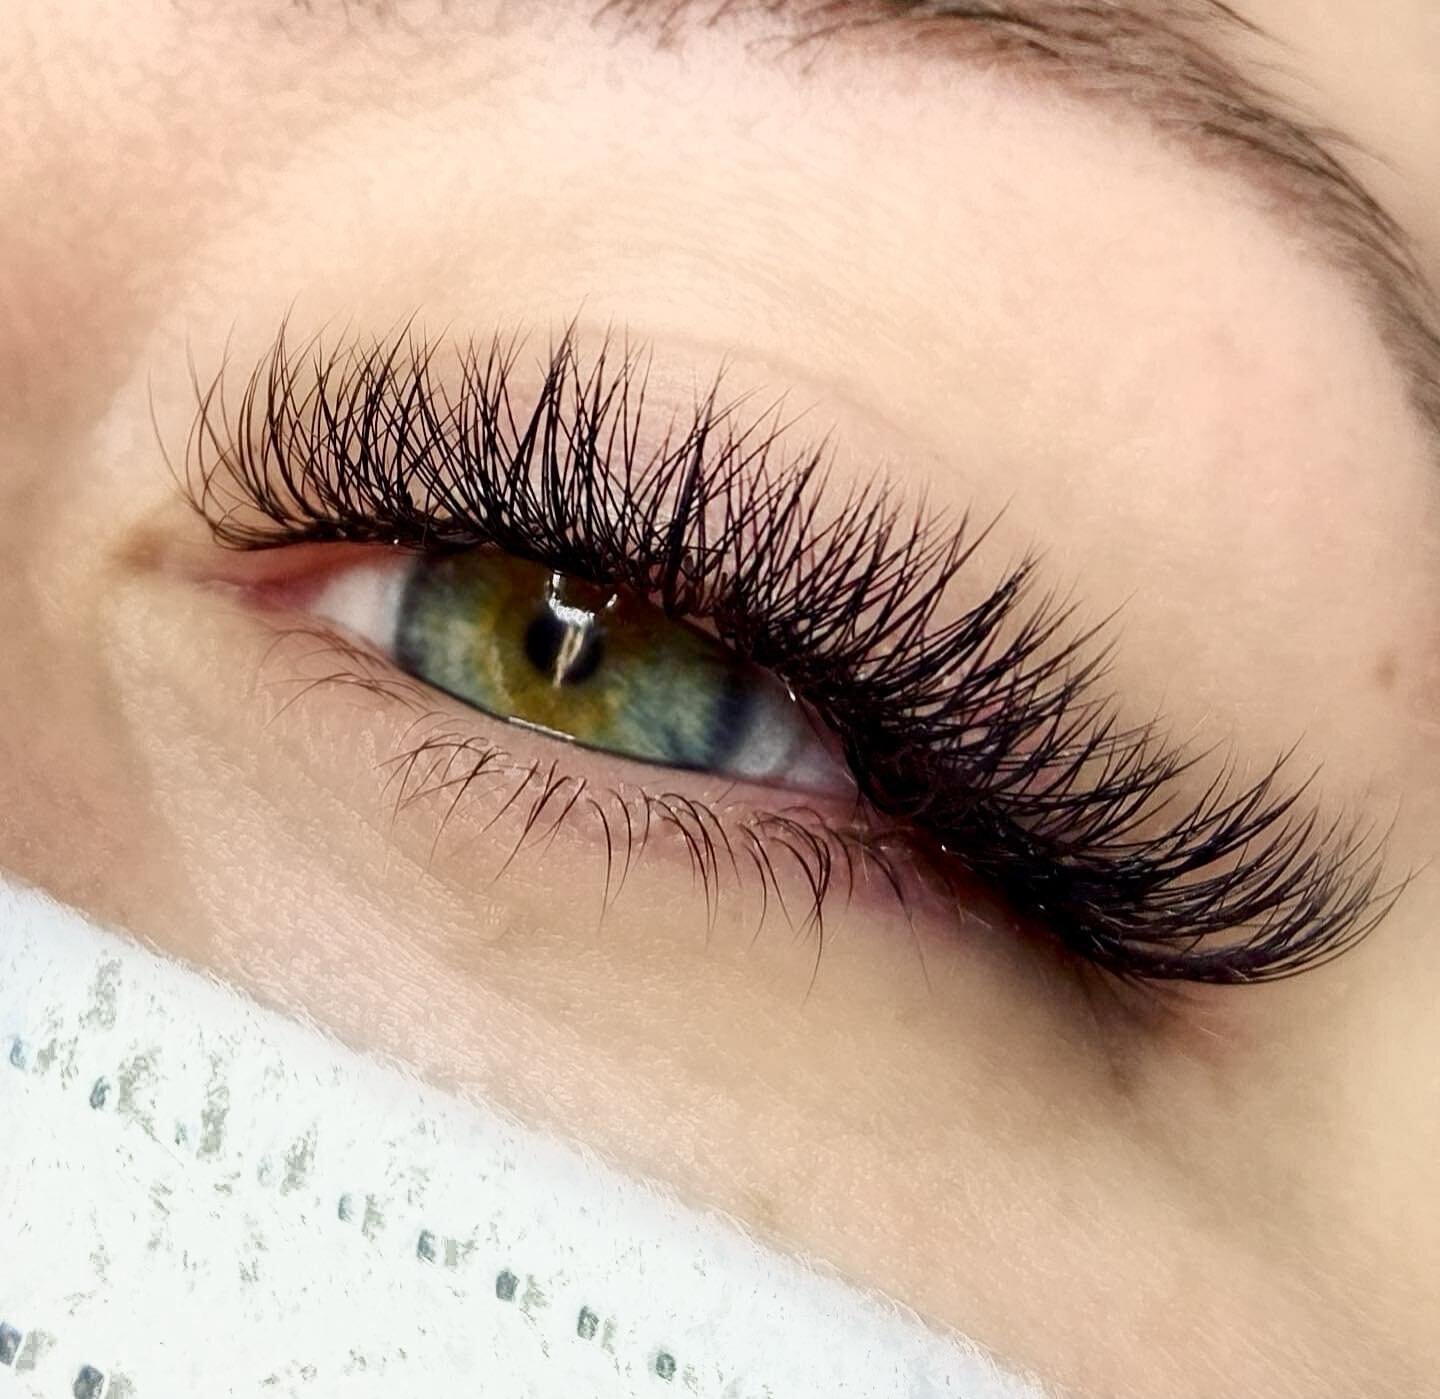 Honestly, have you ever seen such beautiful eyes? 😍 And with @sidney_esthetics lashes??? Perfection.✨
&bull;
&bull;
&bull;
&bull;
#lash #lashes #lashextensions #lashesonfleek #lashesfordays #lashesonpoint #lashartist #eyelashextensions #eyelashes #b